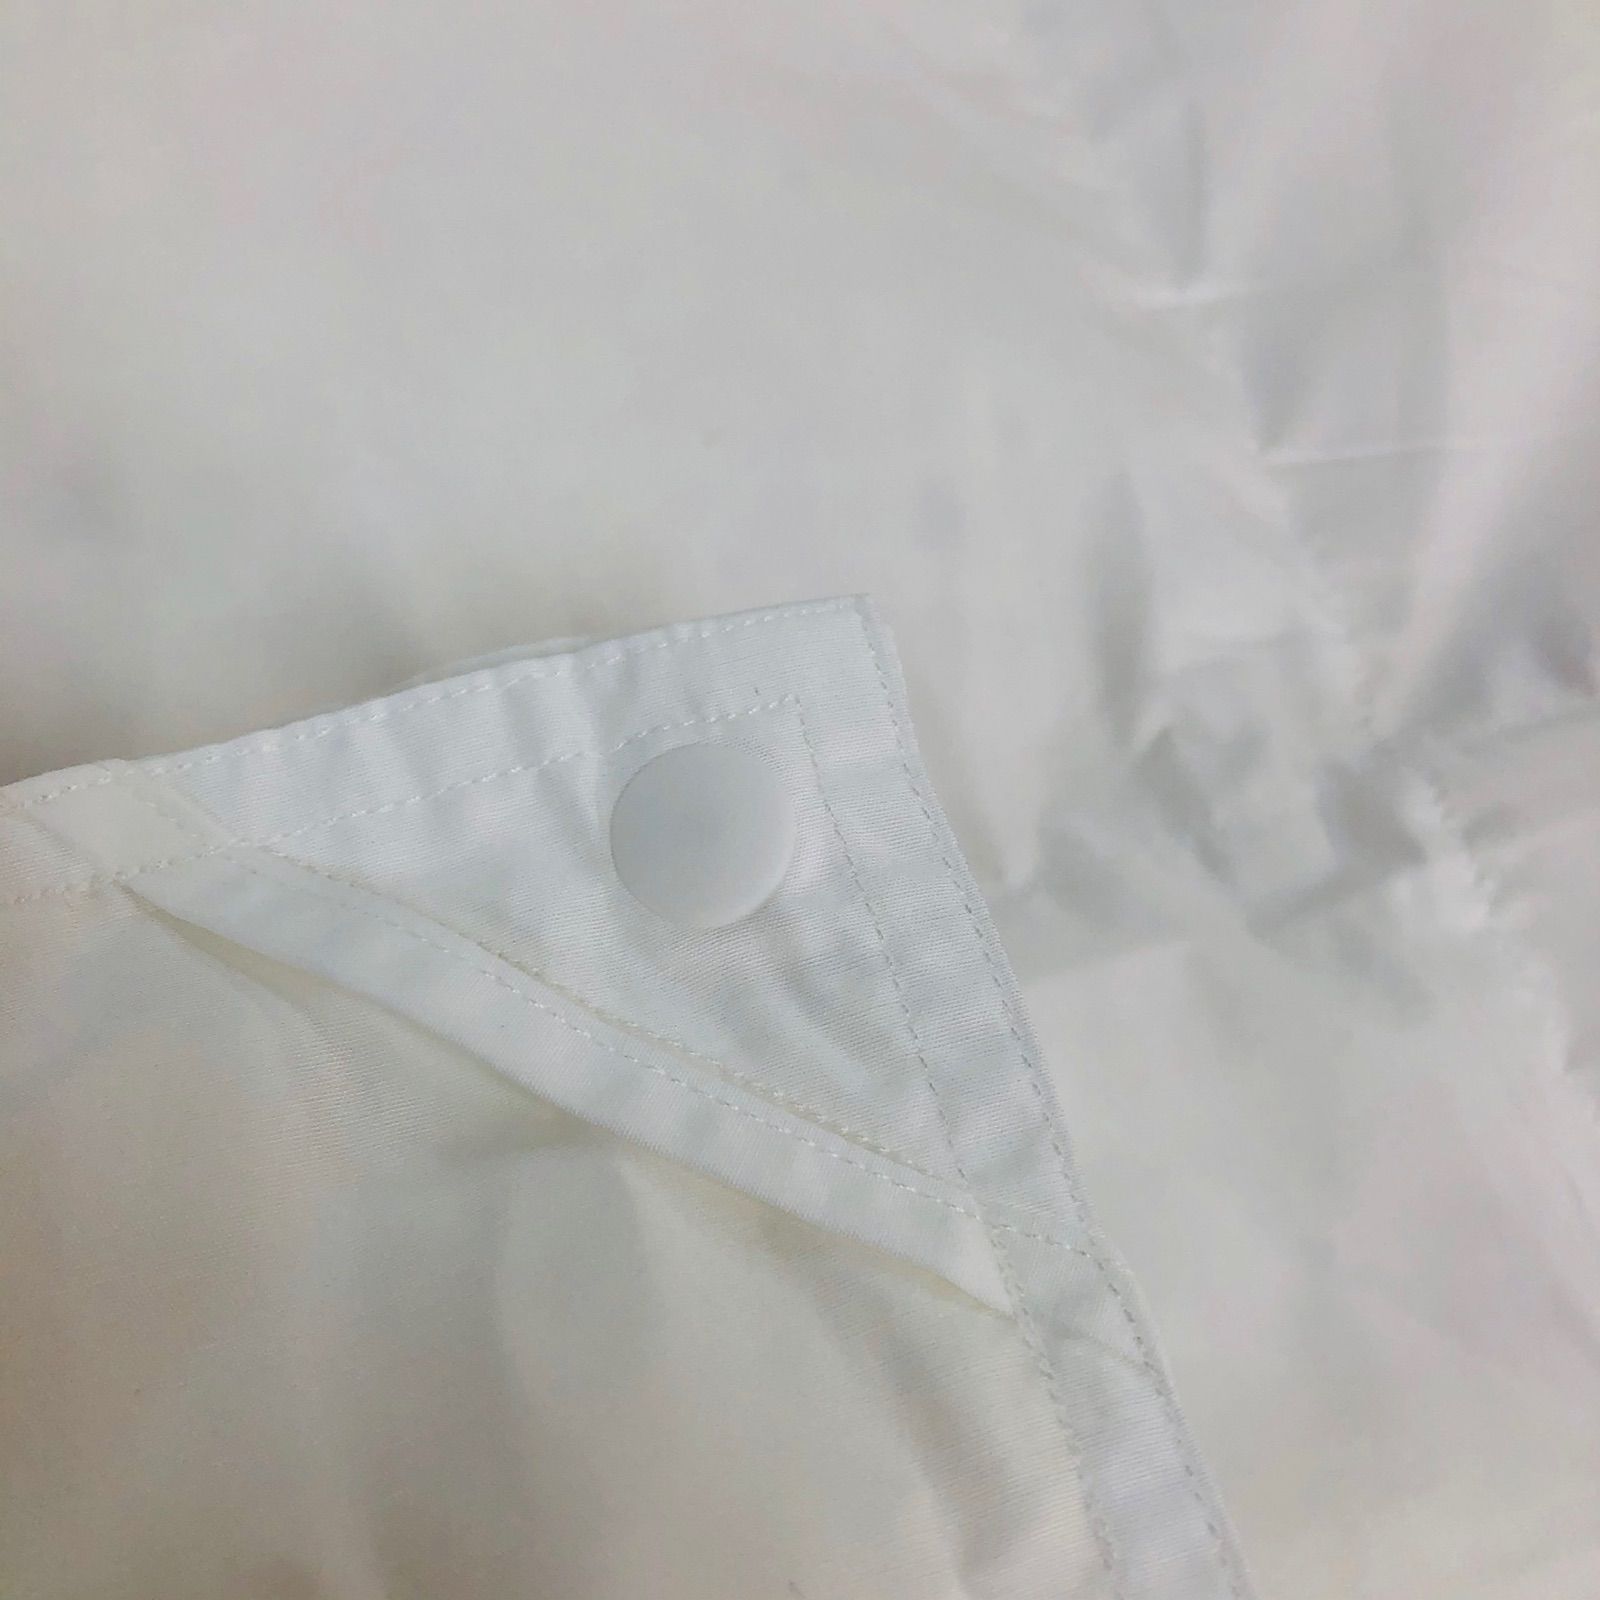 2枚合わせ 羽毛布団 セミダブル エクセルゴールド 白色 日本製 170×210